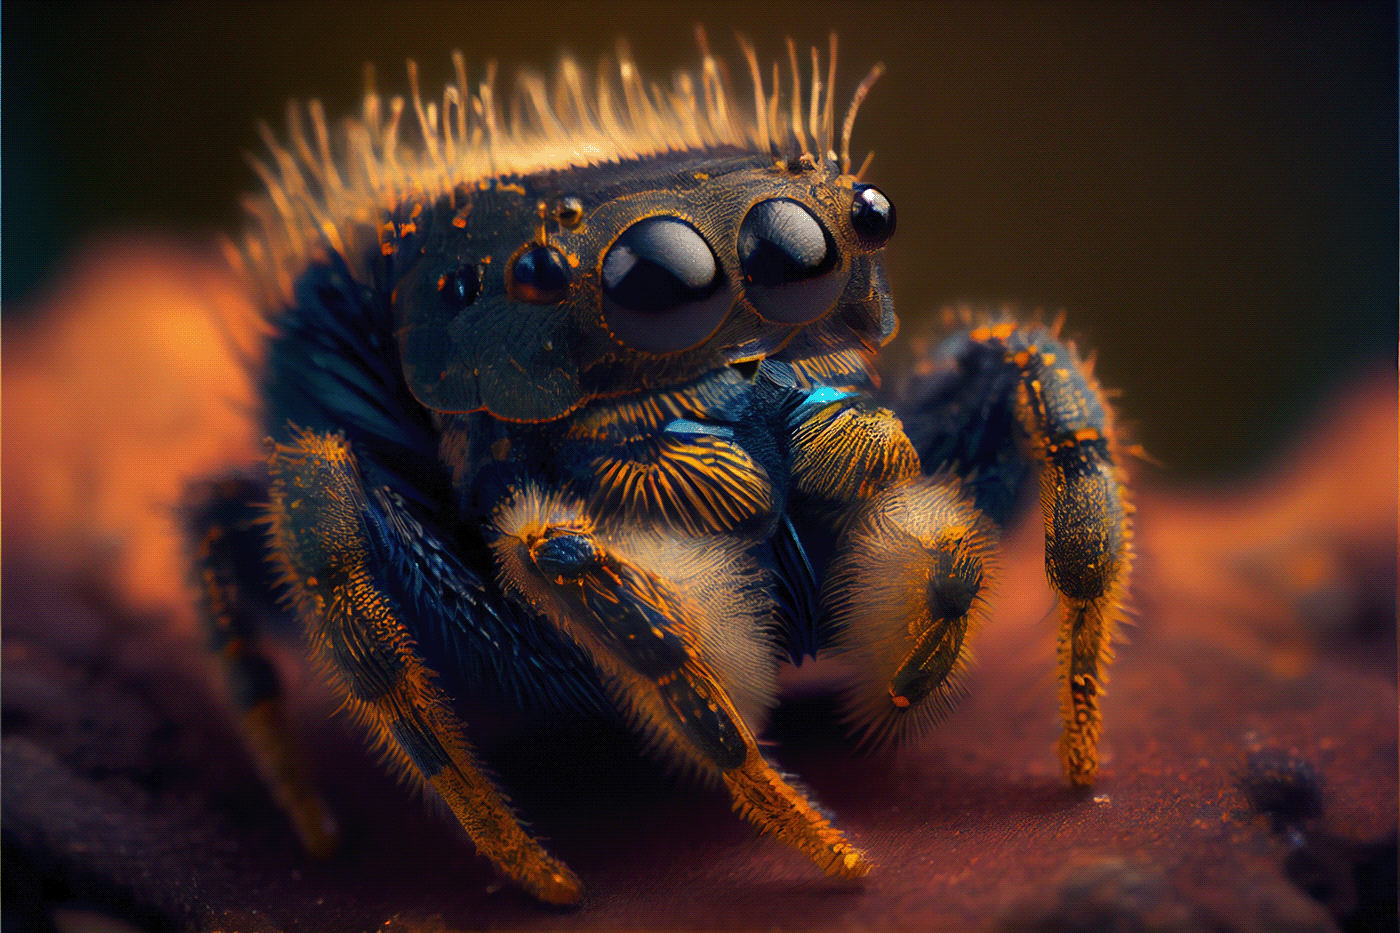 Arachnid details golden insect intricate Macro Photography Nature phidippus regius Sharp spider